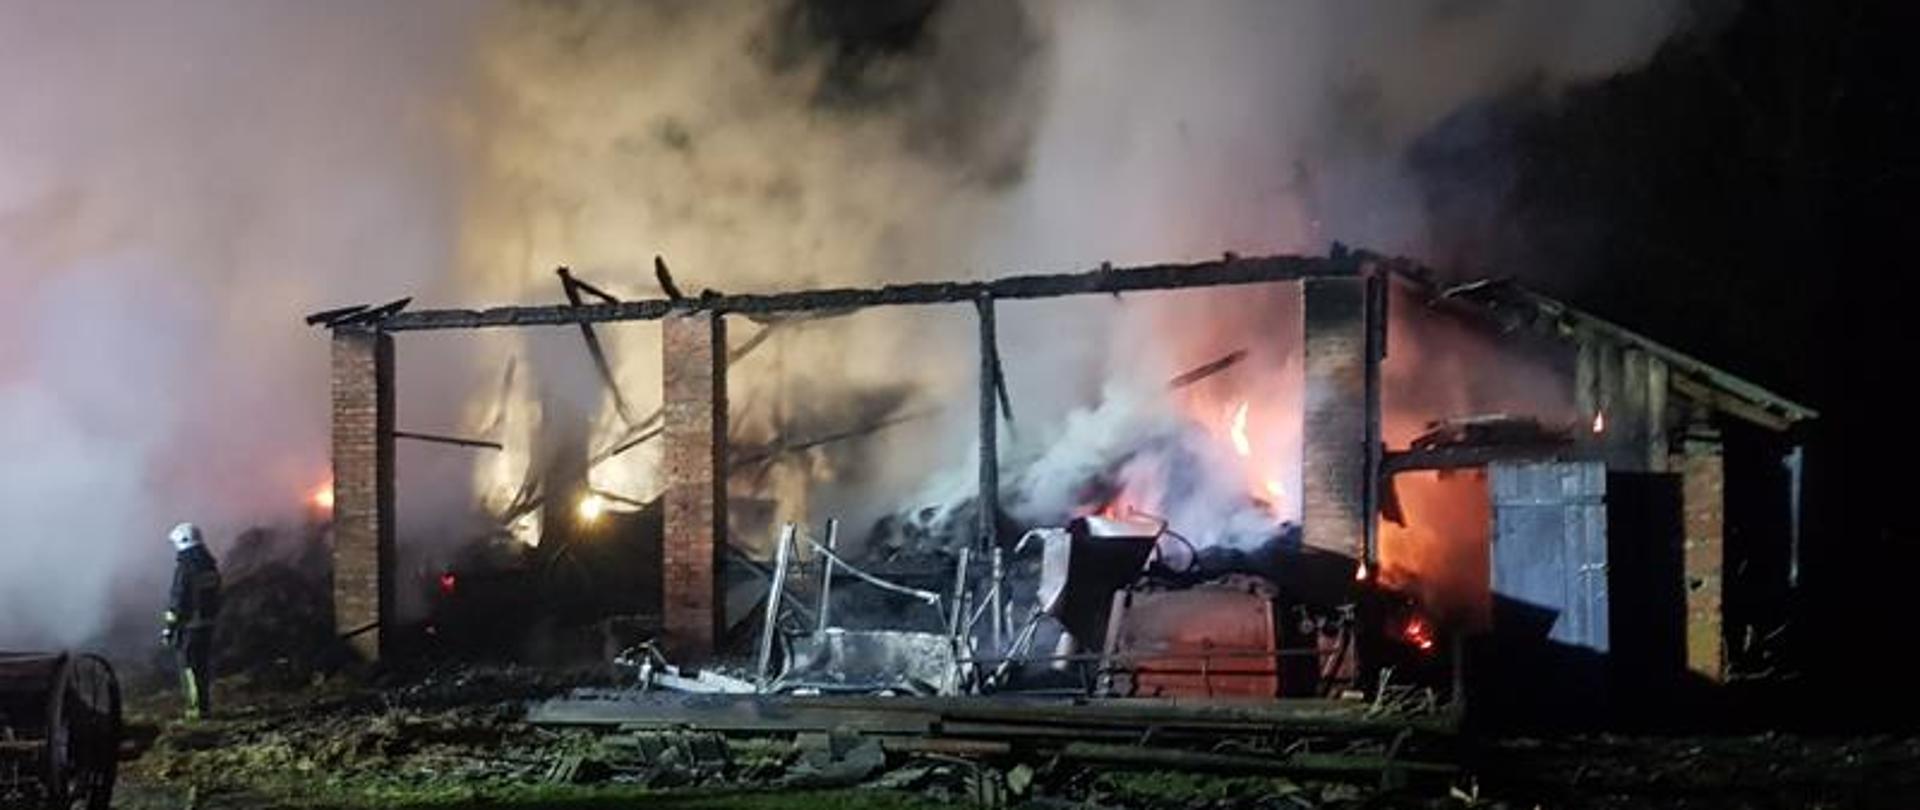 Widok całkowicie spalonej stodoły jakie zniszczenia spowodował pożar.